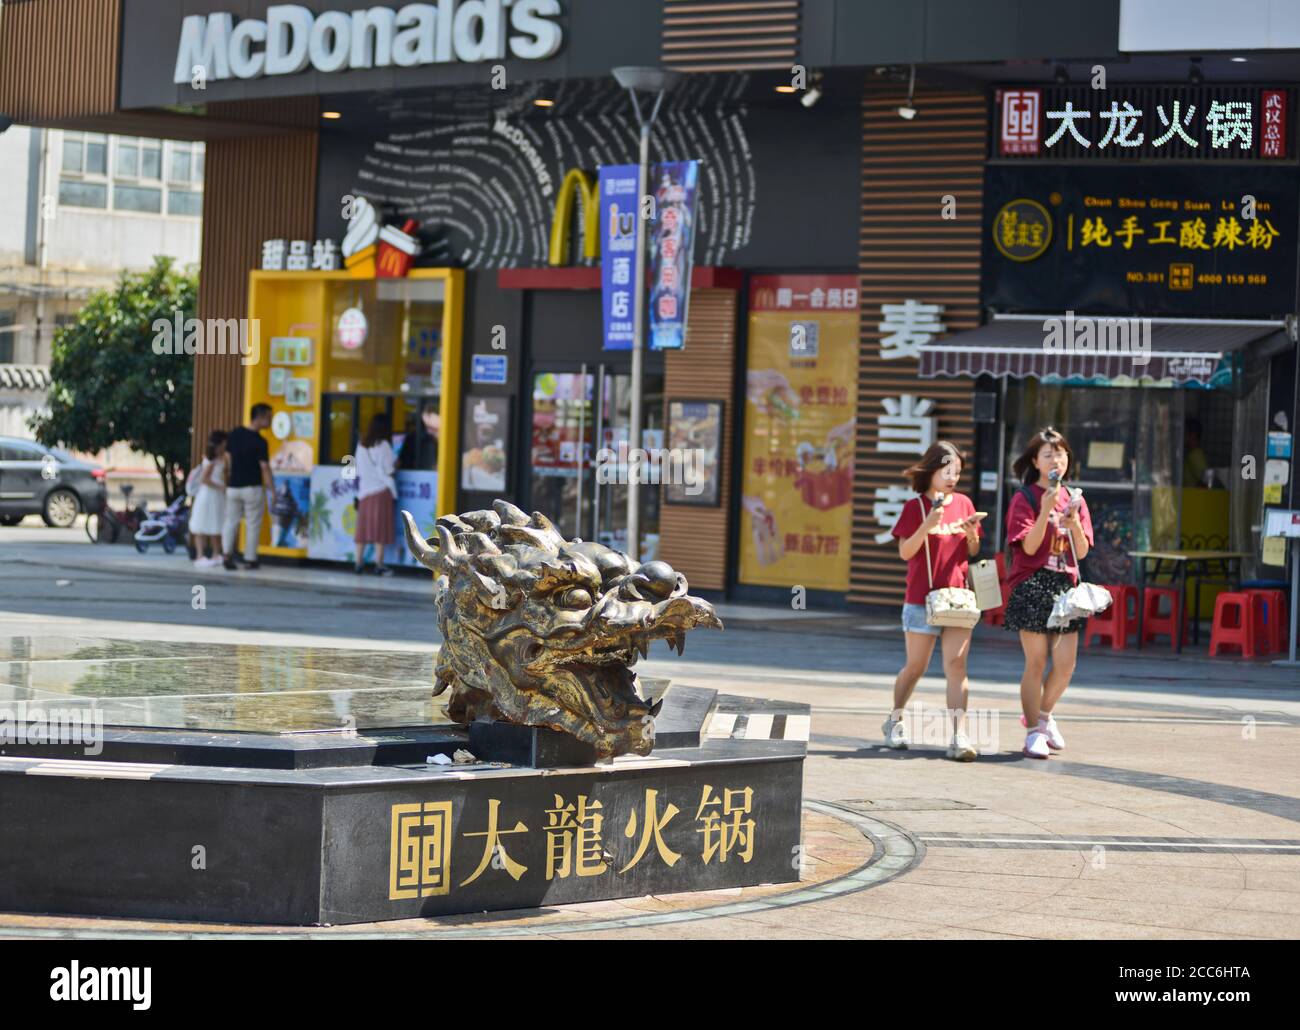 Sculpture de tête de dragon dans un banc. Jianghan Road, Wuhan, Chine Banque D'Images